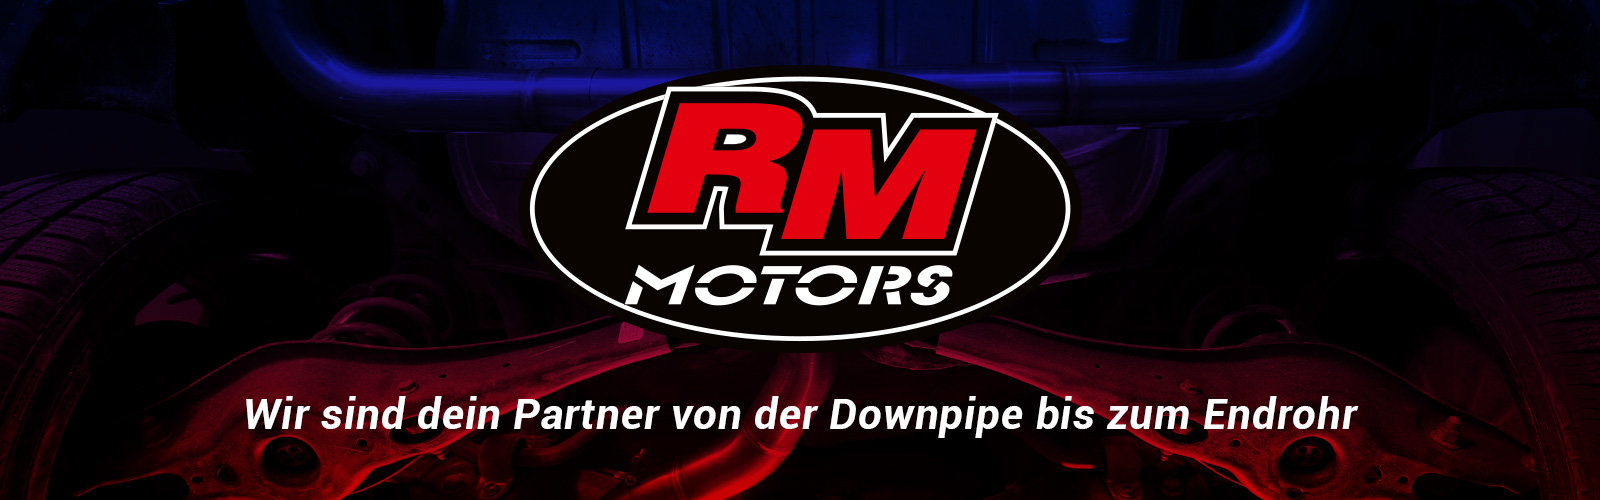 RM Motors - Dein Partner von der Downpipe bis zum Endrohr 